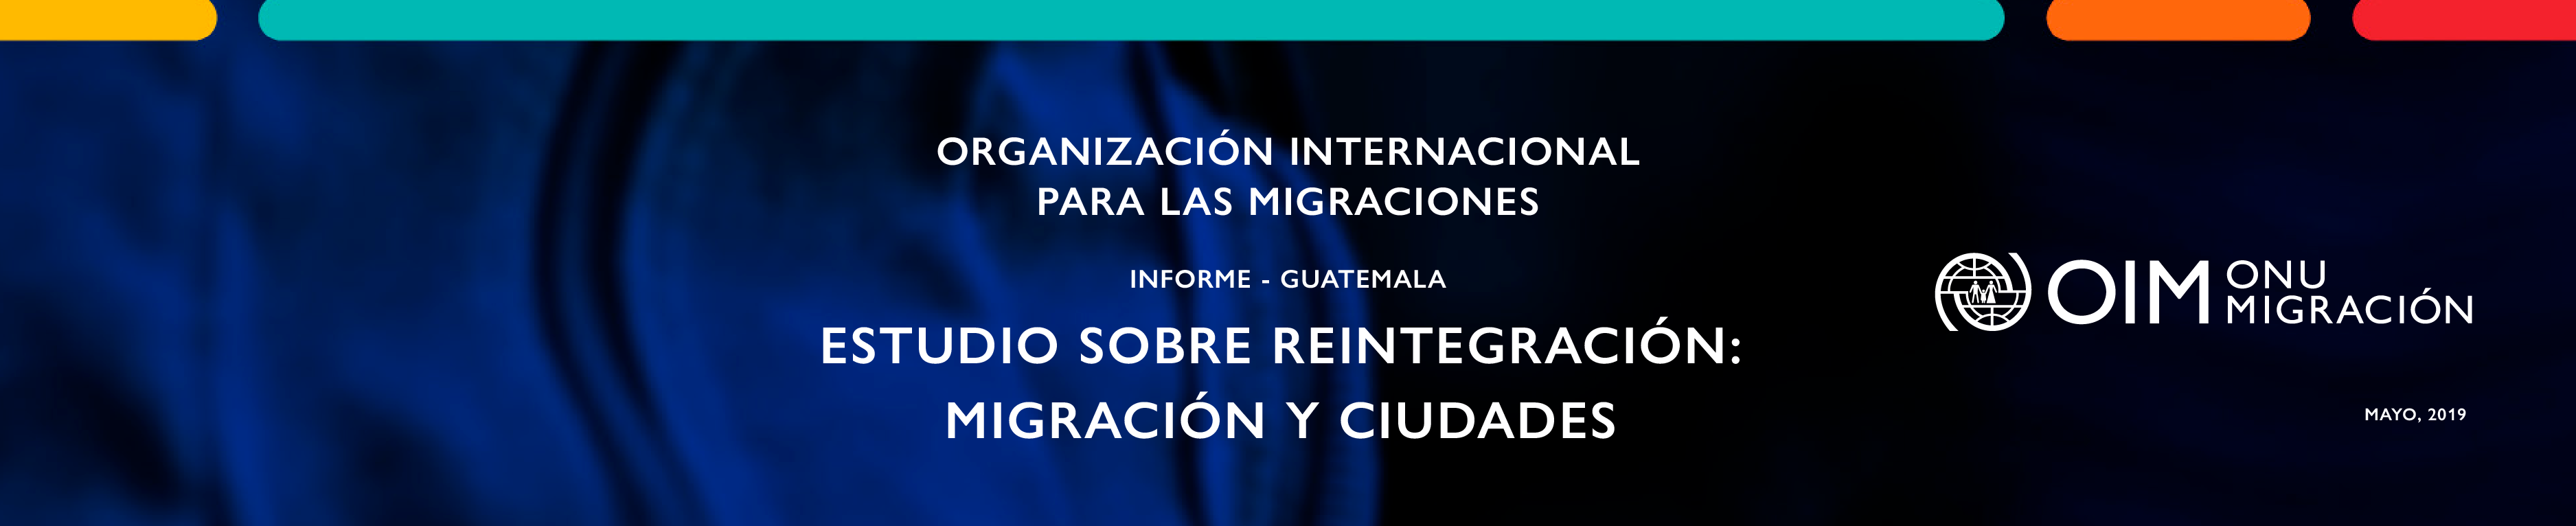 Estudio sobre reintegración: migración y ciudades | Informe Guatemala